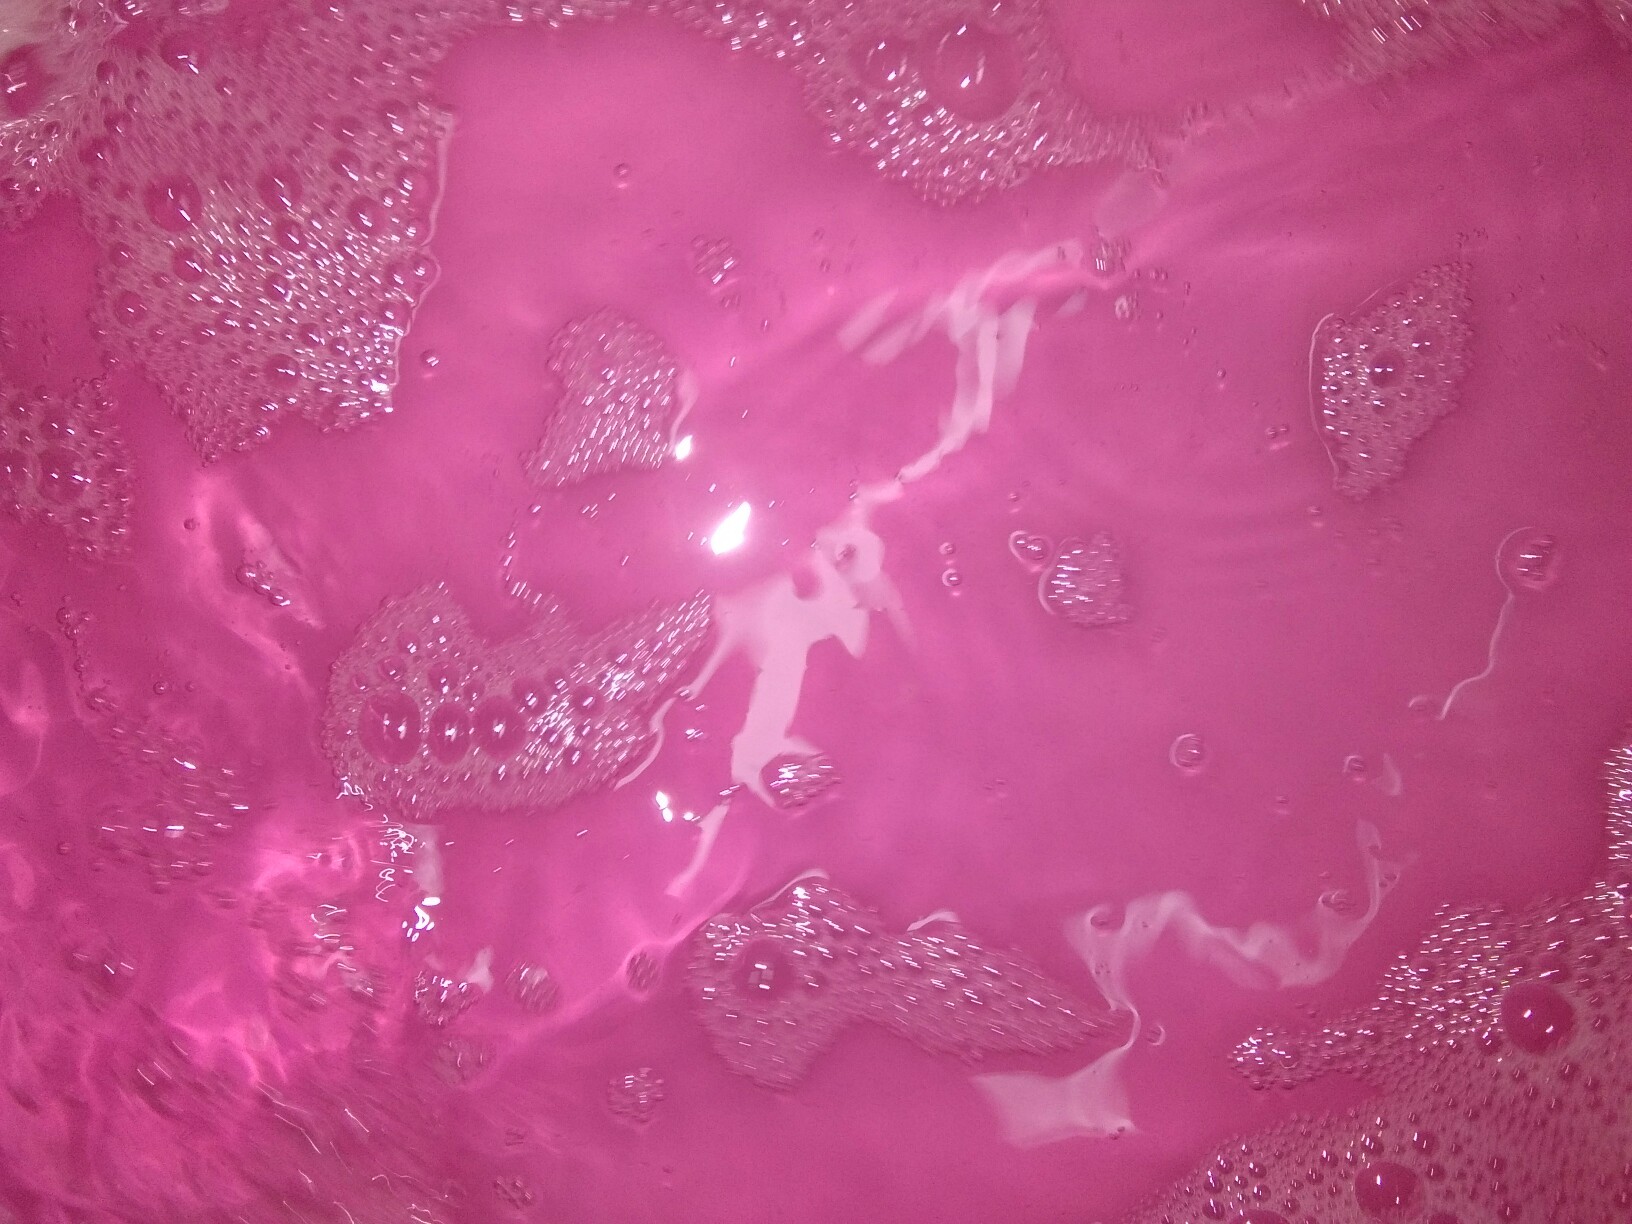 粉红系列之泡泡水壁纸 堆糖 美图壁纸兴趣社区